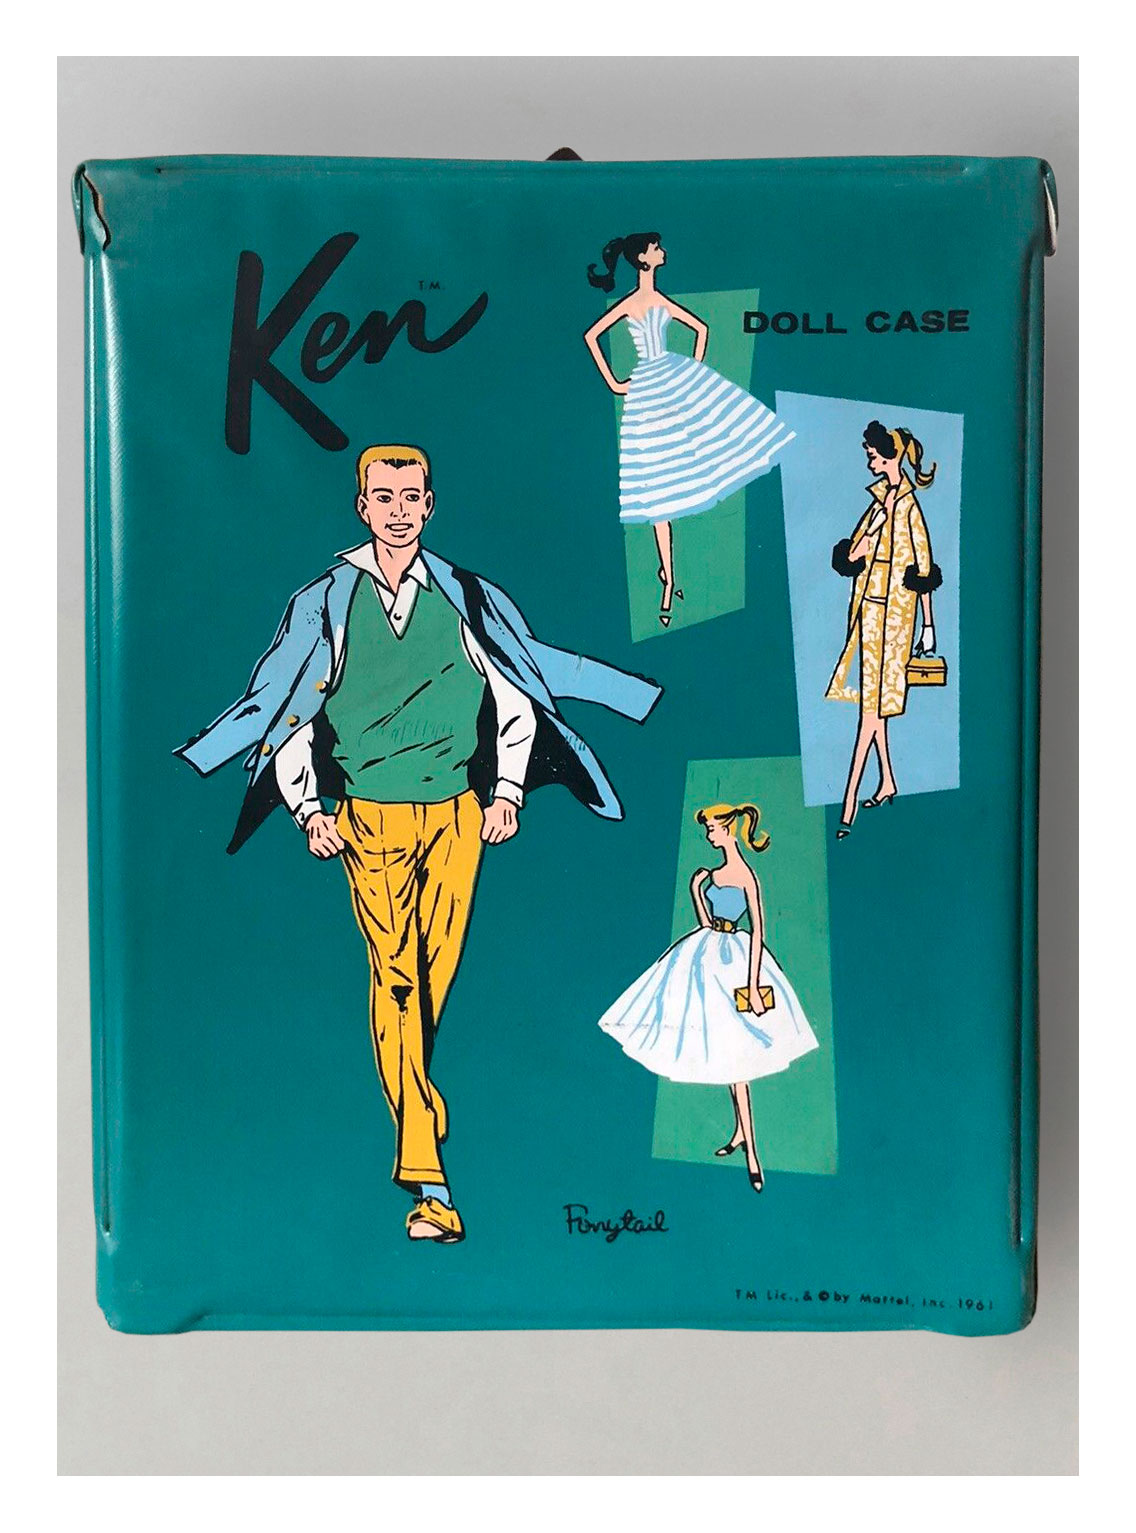 1962 #395 Ken Doll Case by SPP (green)